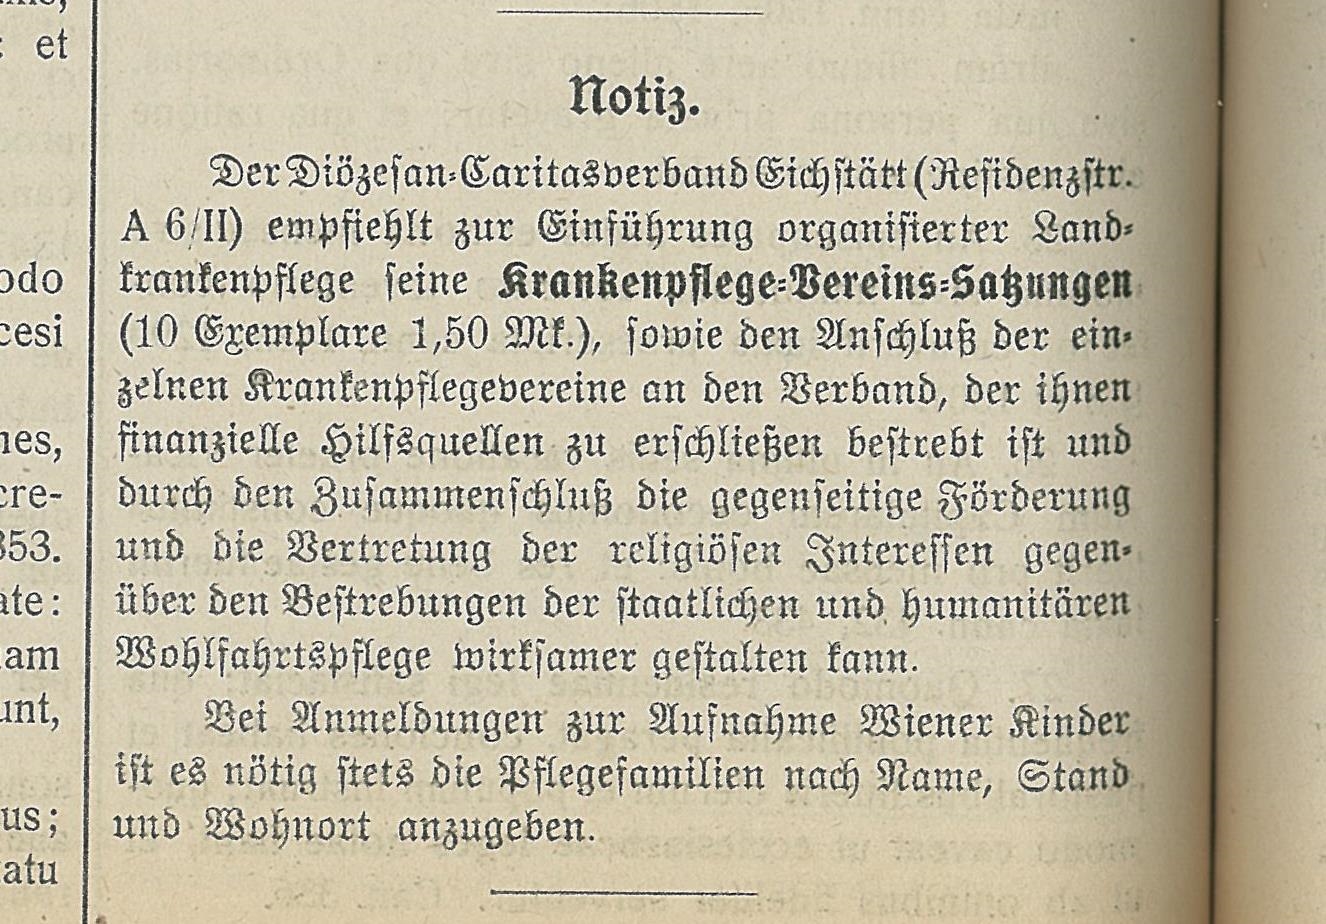 Krankenpflegeverein - 002 - 1919_Krankenpflegevereinsatzung Scan034-1